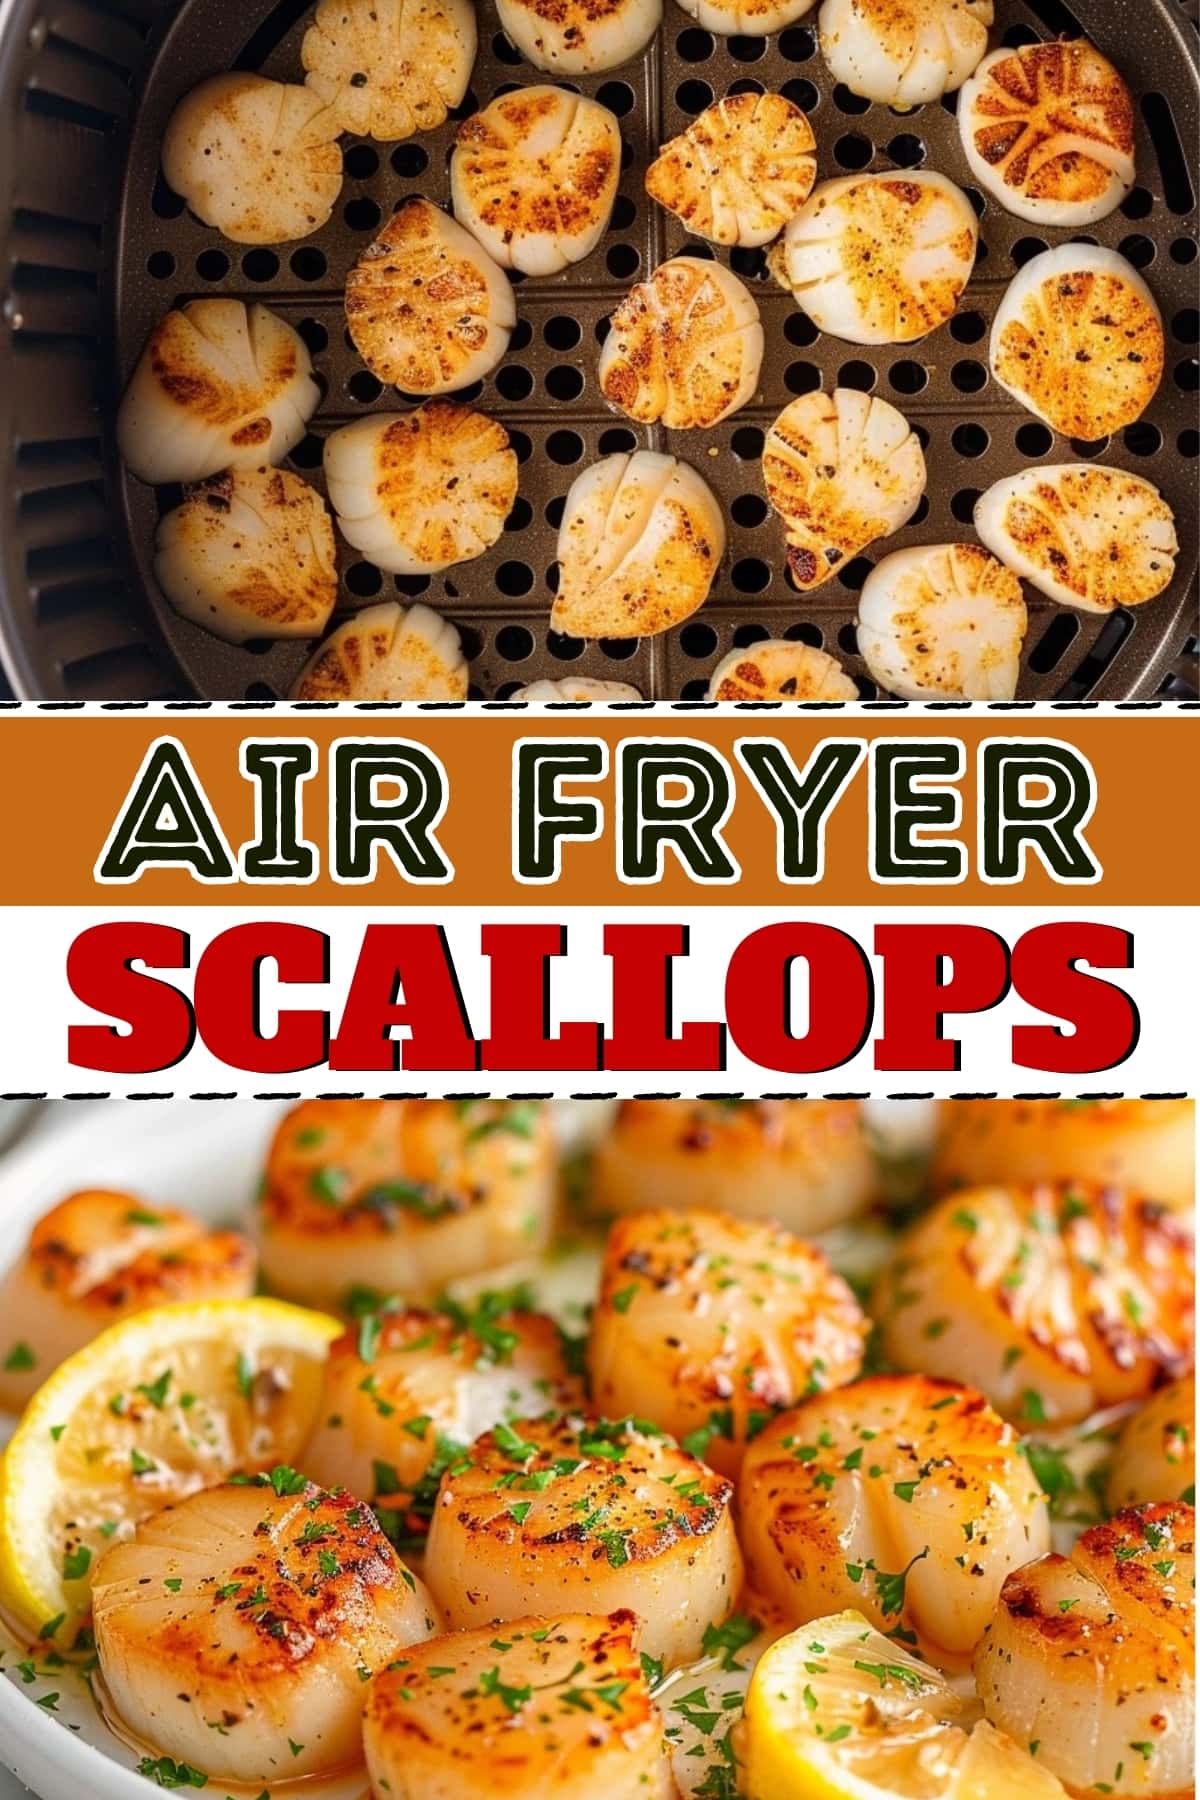 Air fryer scallops.